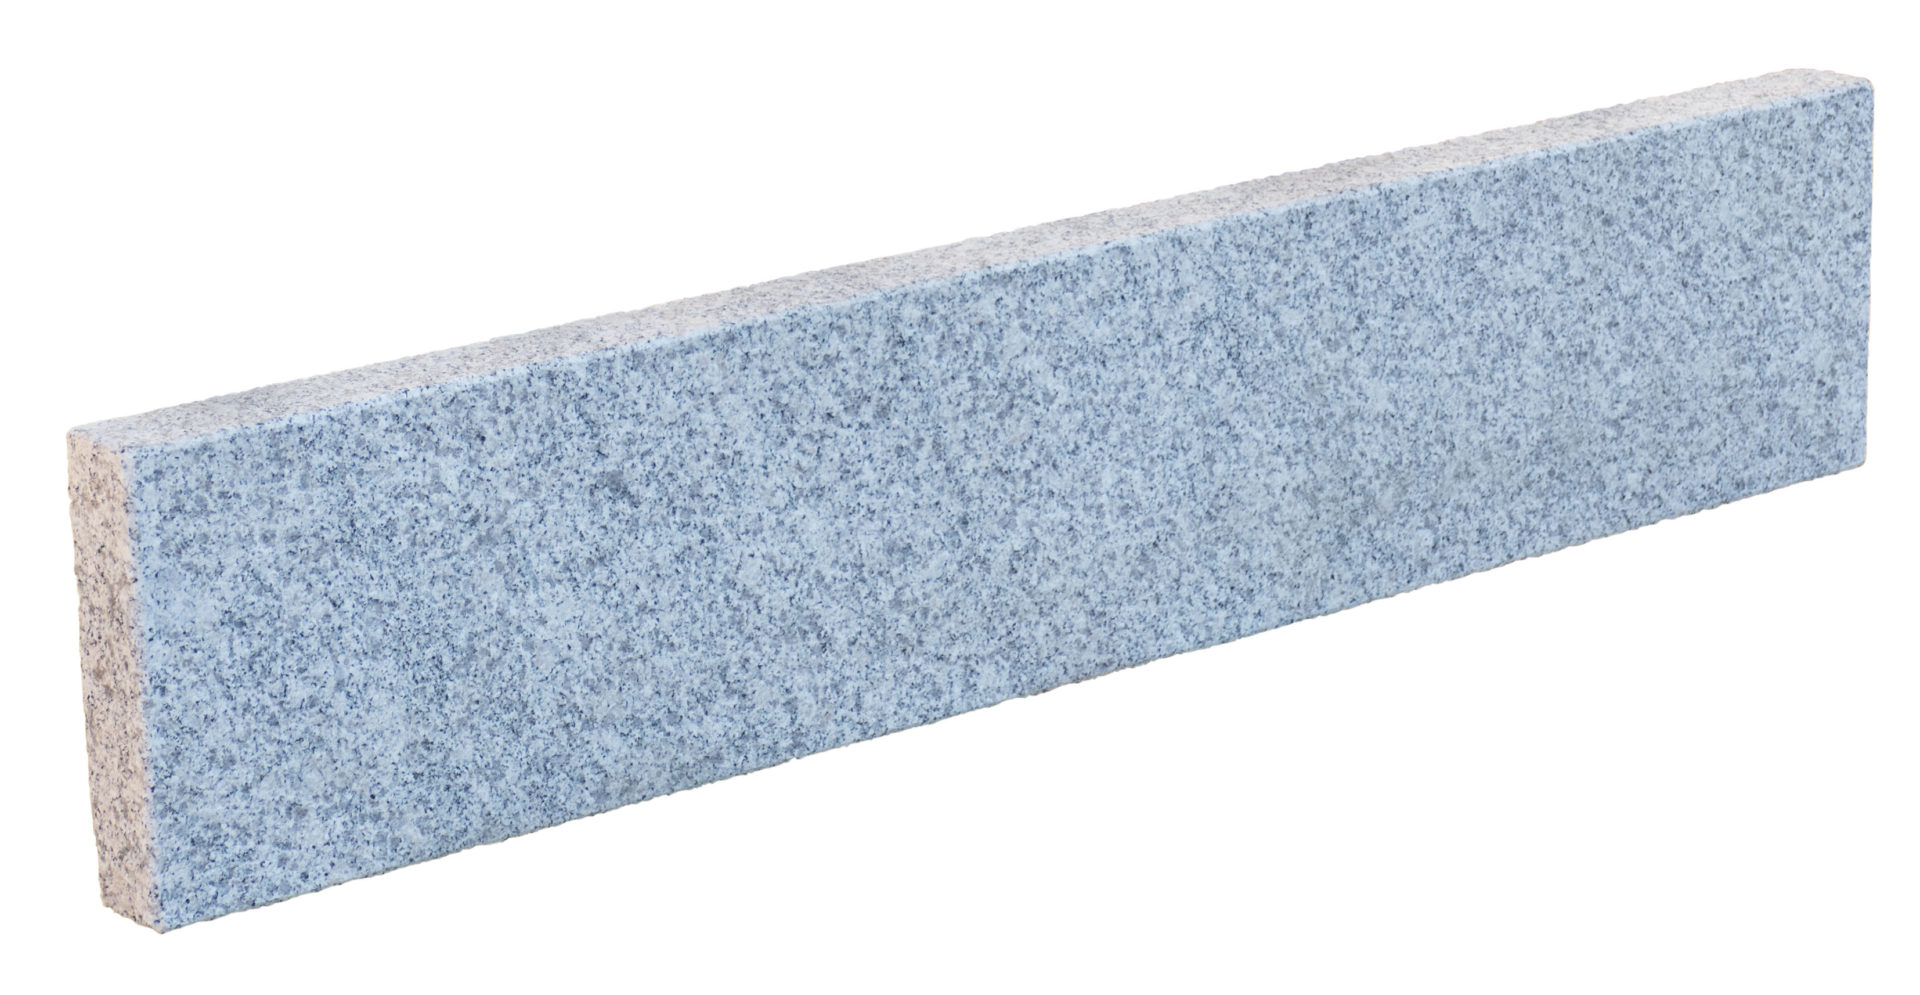 deevert - bordure en pierre naturelle granit – dimensions 100 x 20 x 5 cm - 04